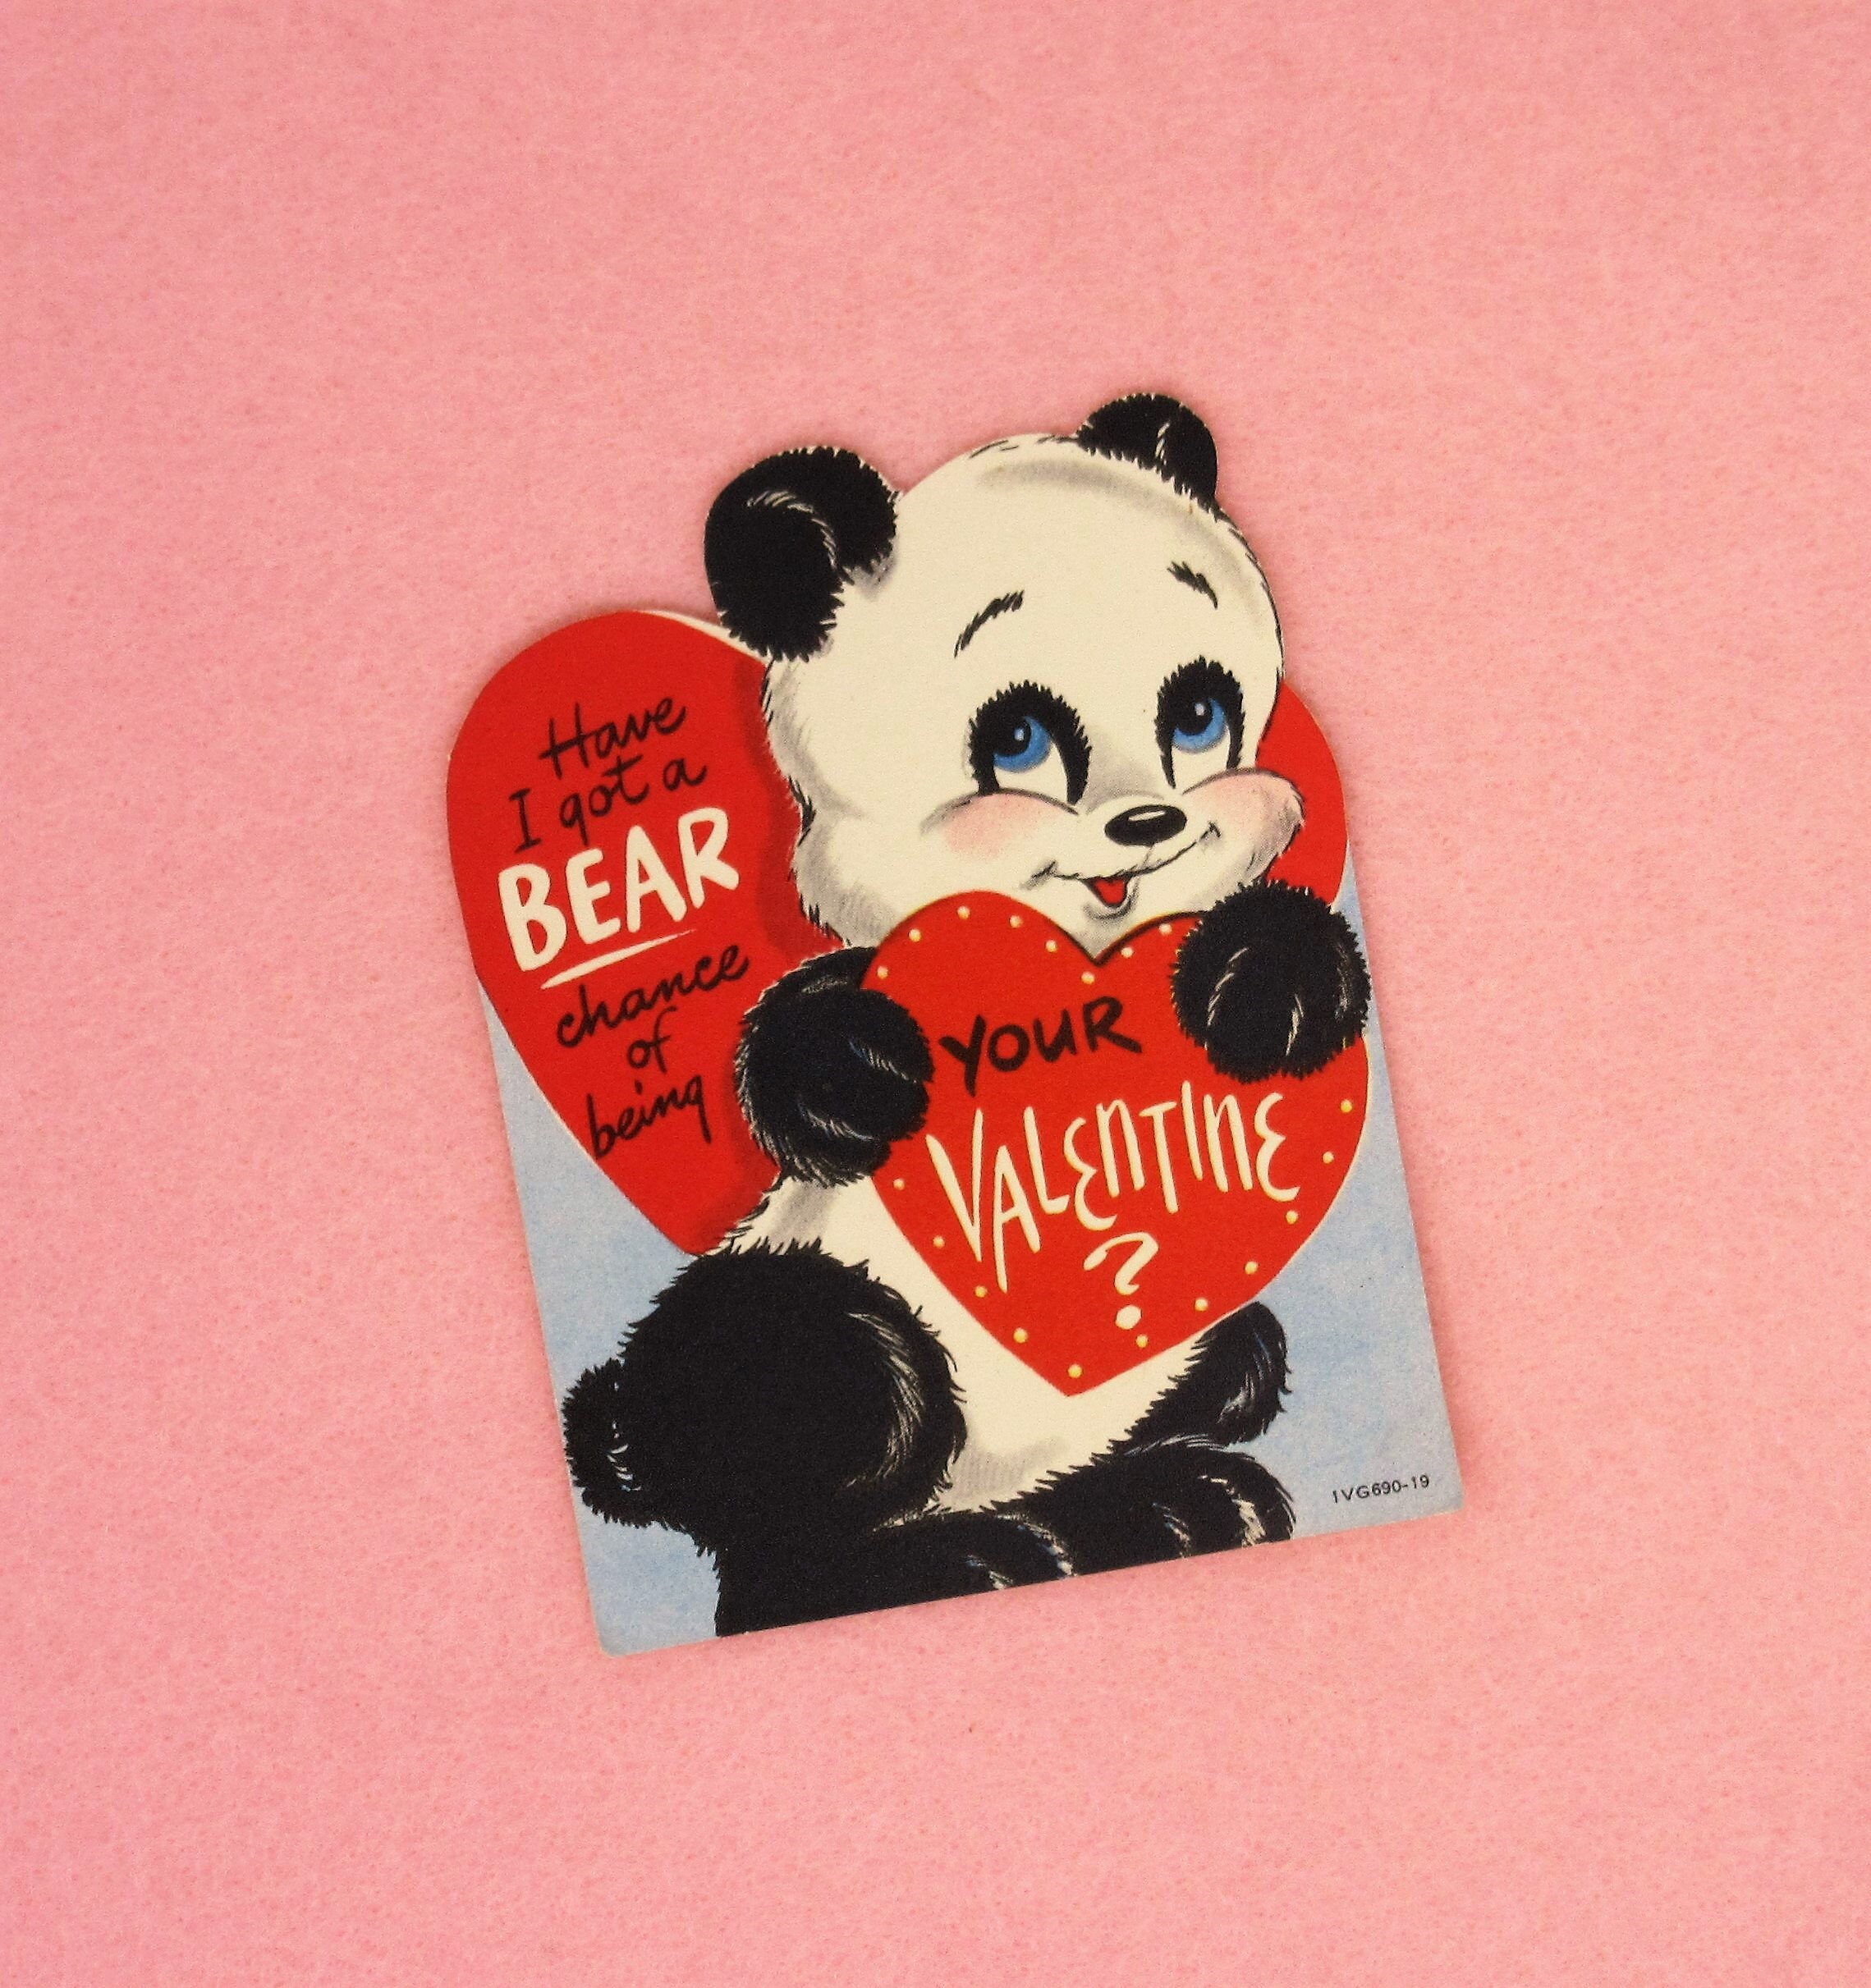 UNUSED - Pop-up Light Bulb, Bears, Comic - 1950's Vintage Valentine Card